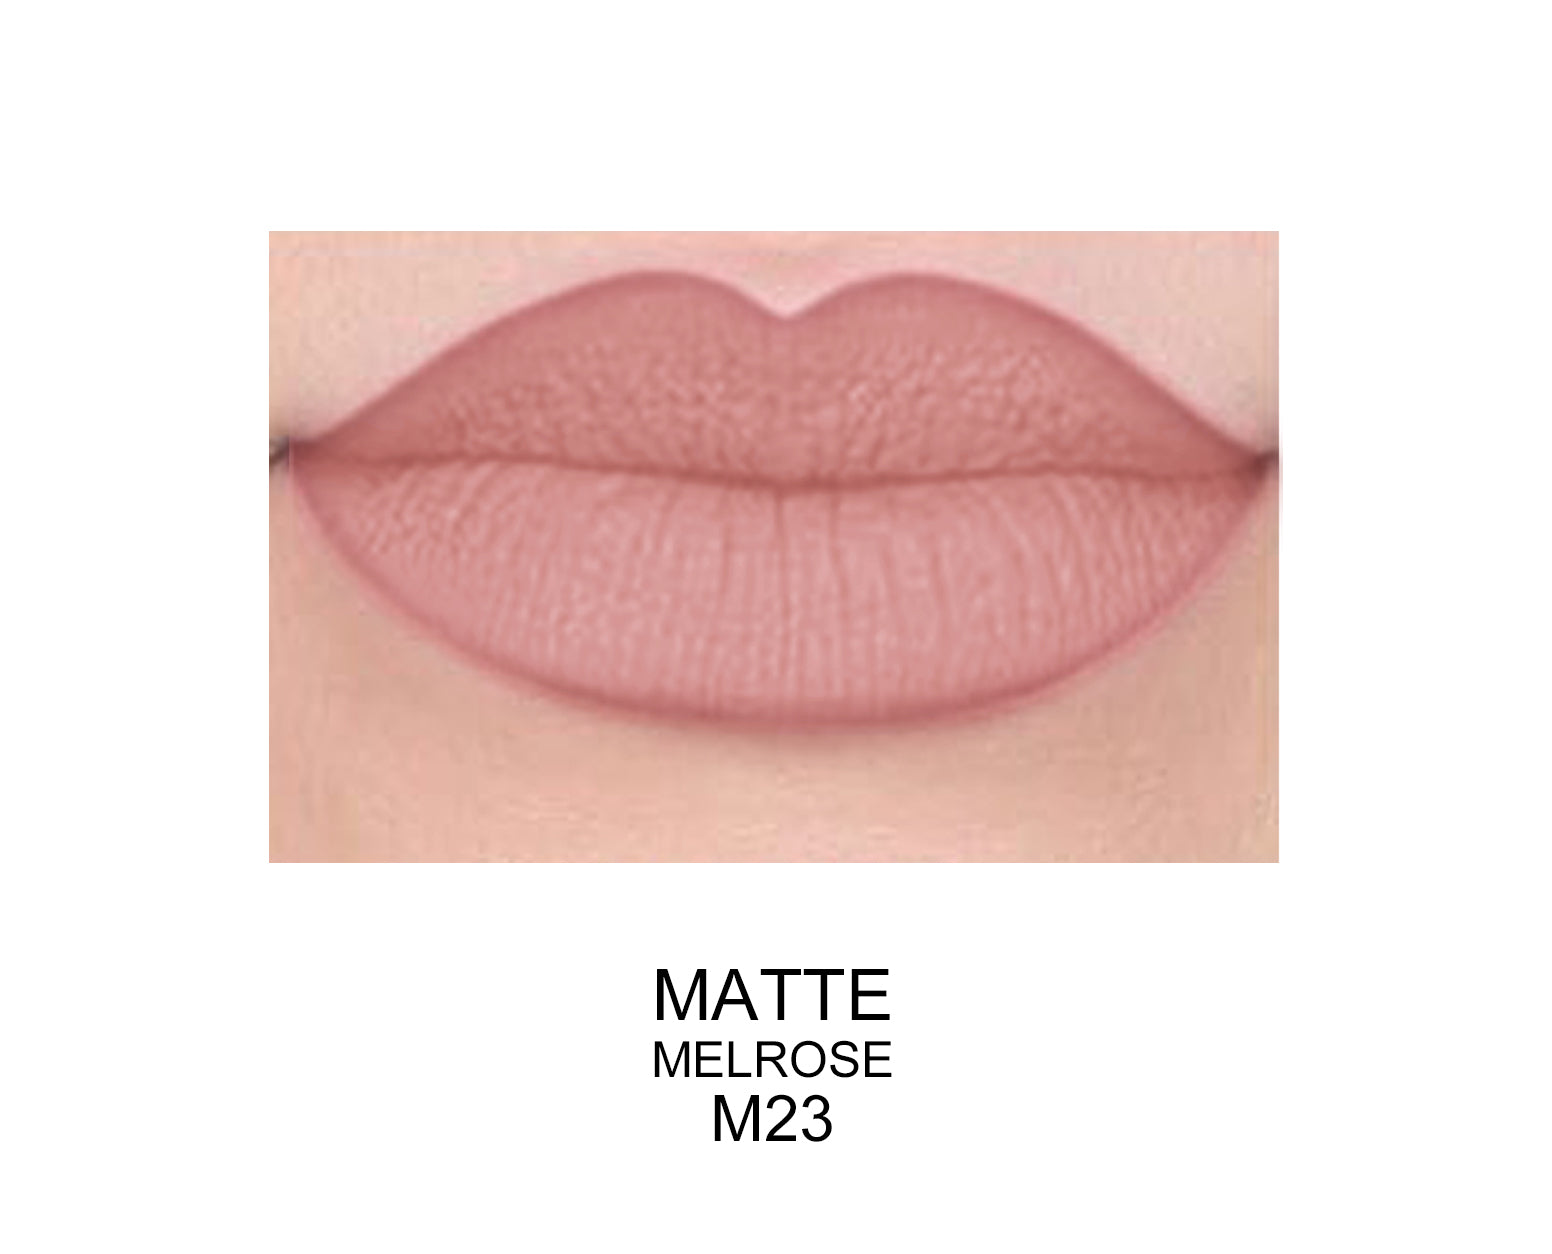 Long Lasting Matte Lip Gloss matte melrose m23